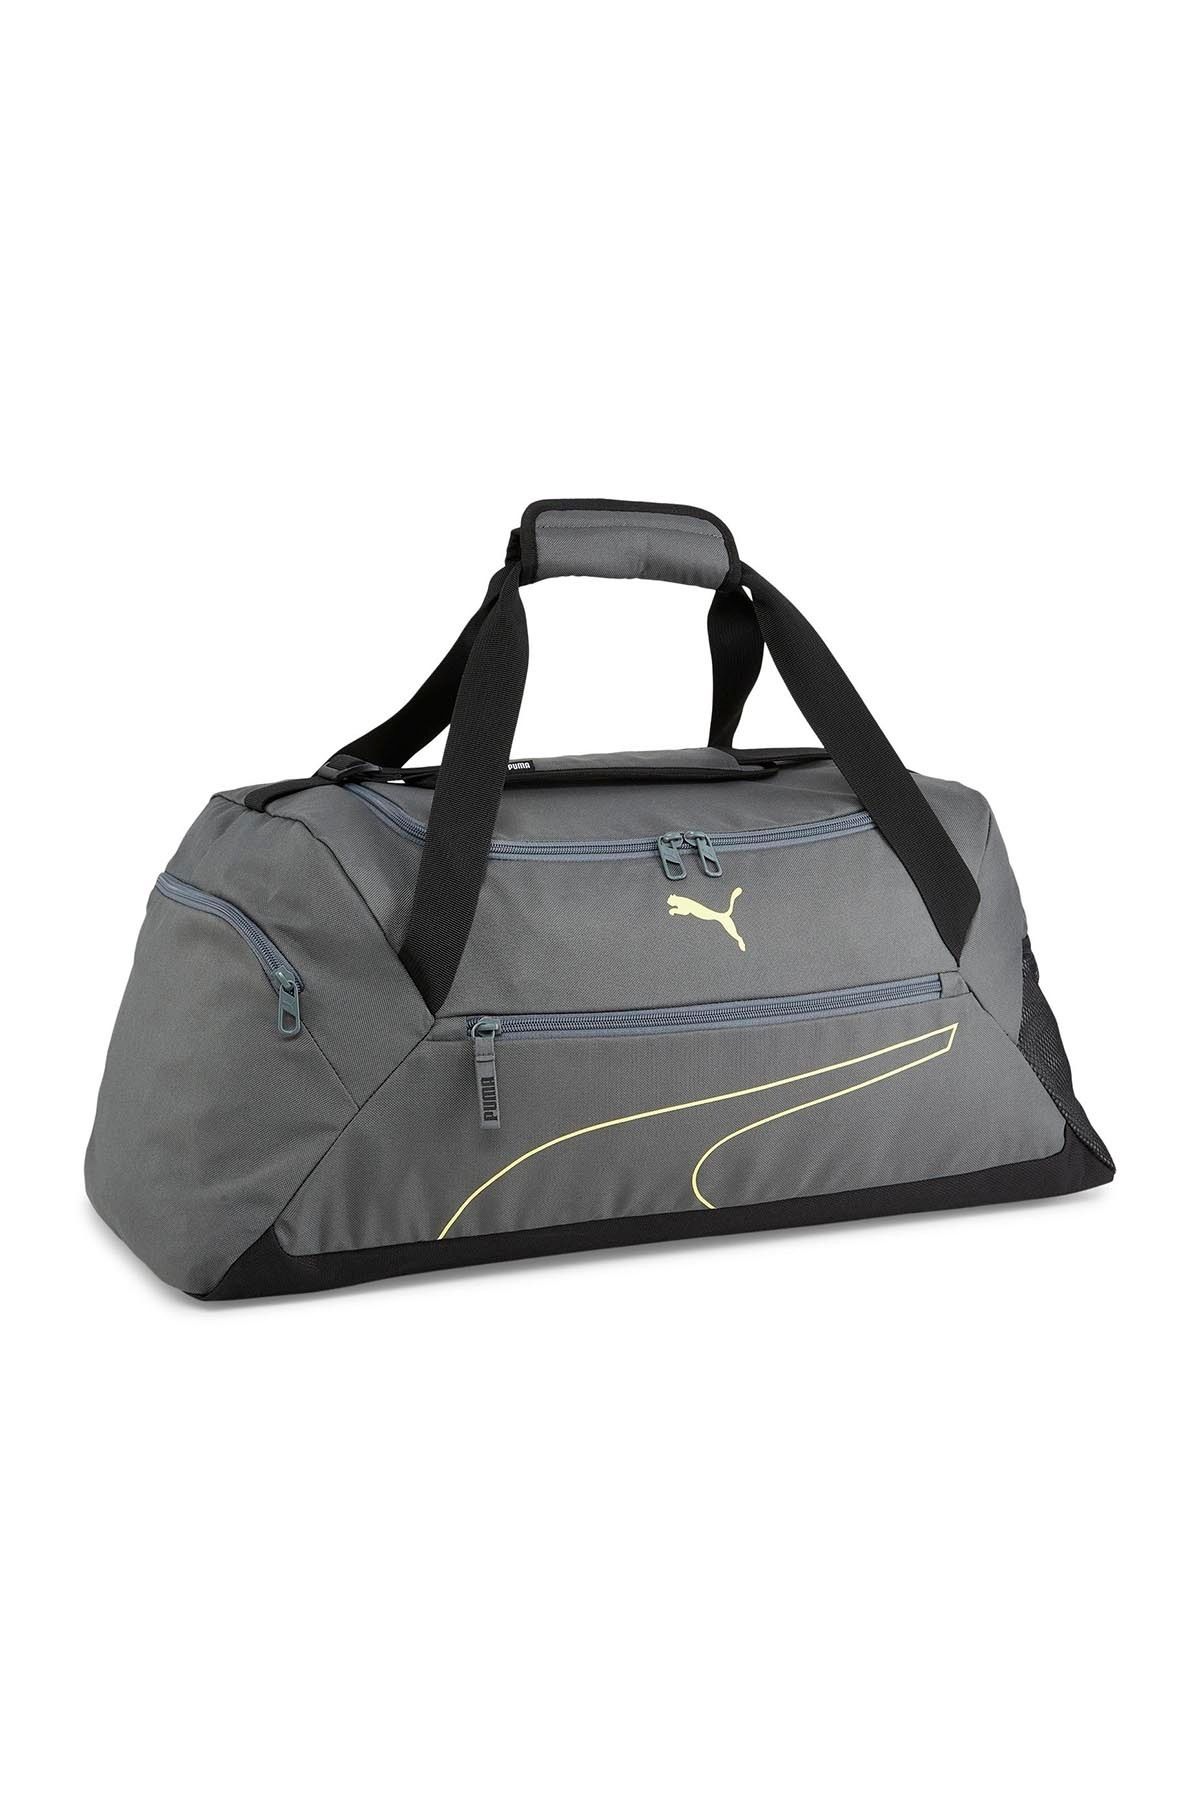 Puma Fundamentals Sports Bag M09033302